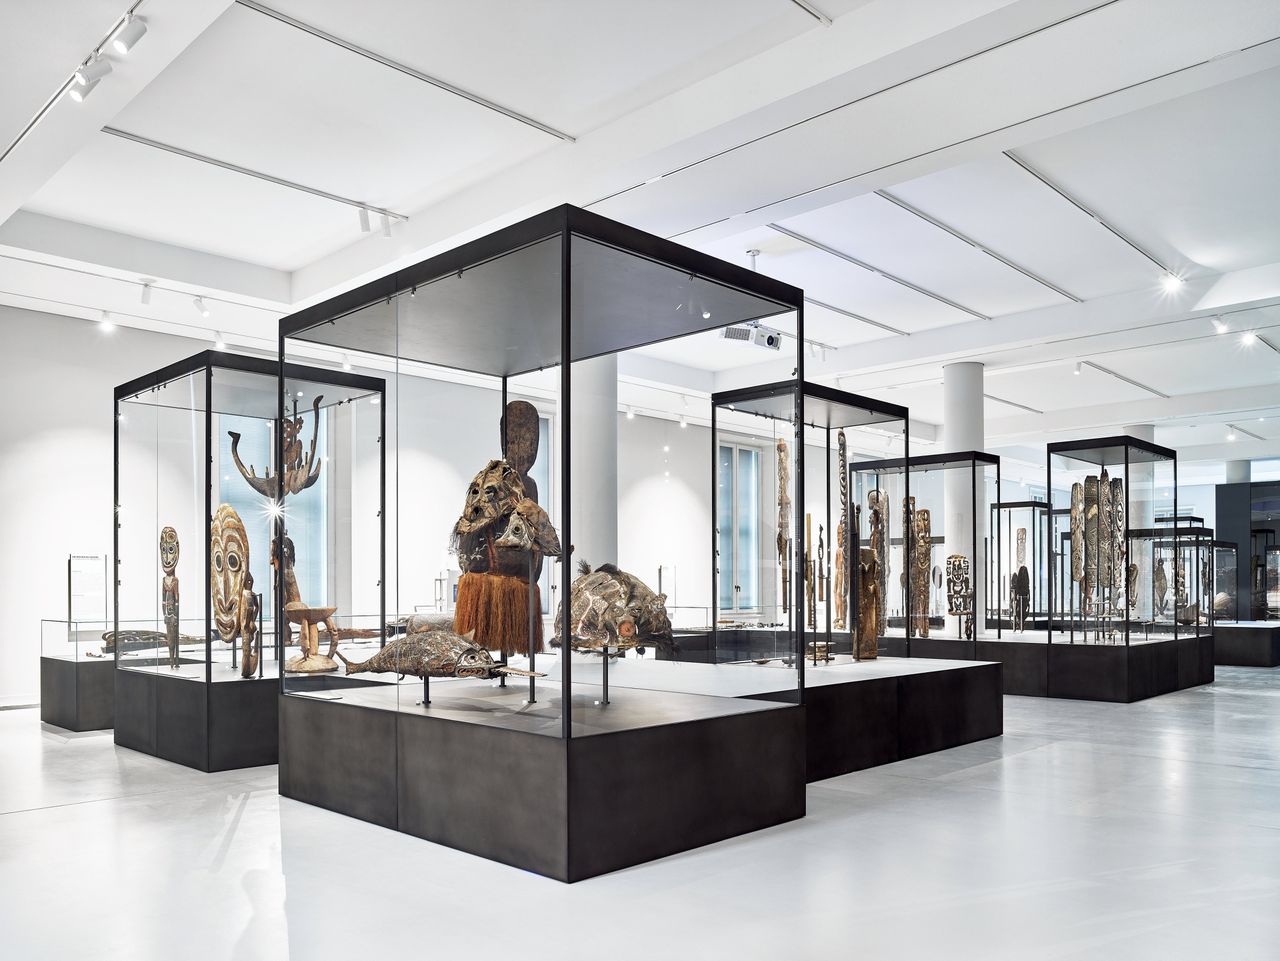 De nieuwe permanente opstelling van het Etnologische Museum, gevestigd in het Humboldt Forum in Berlijn.